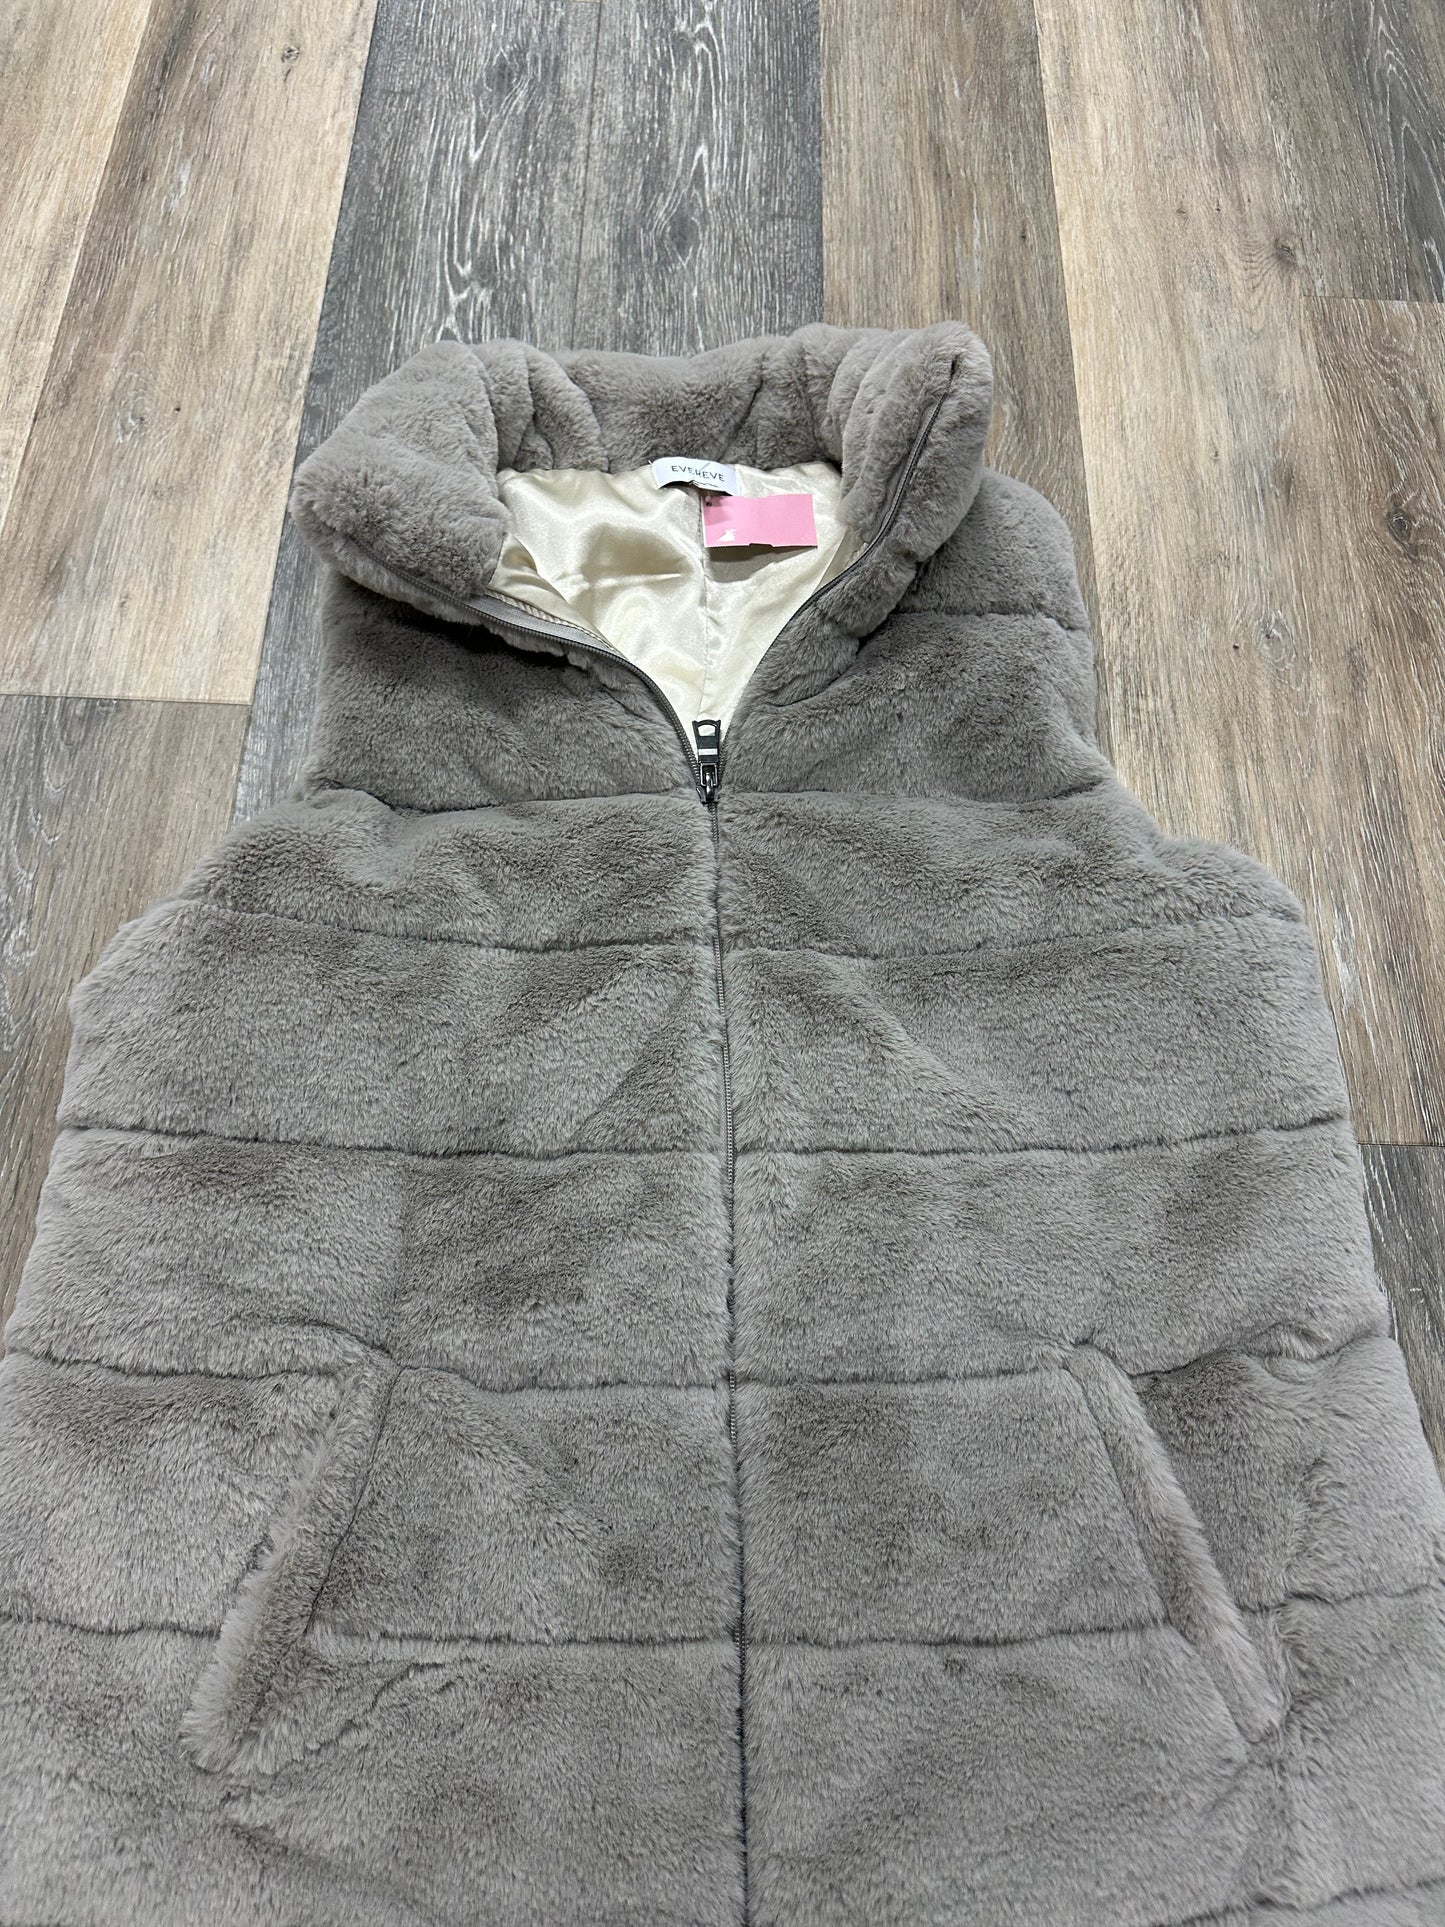 Vest Fleece By Evereve  Size: L